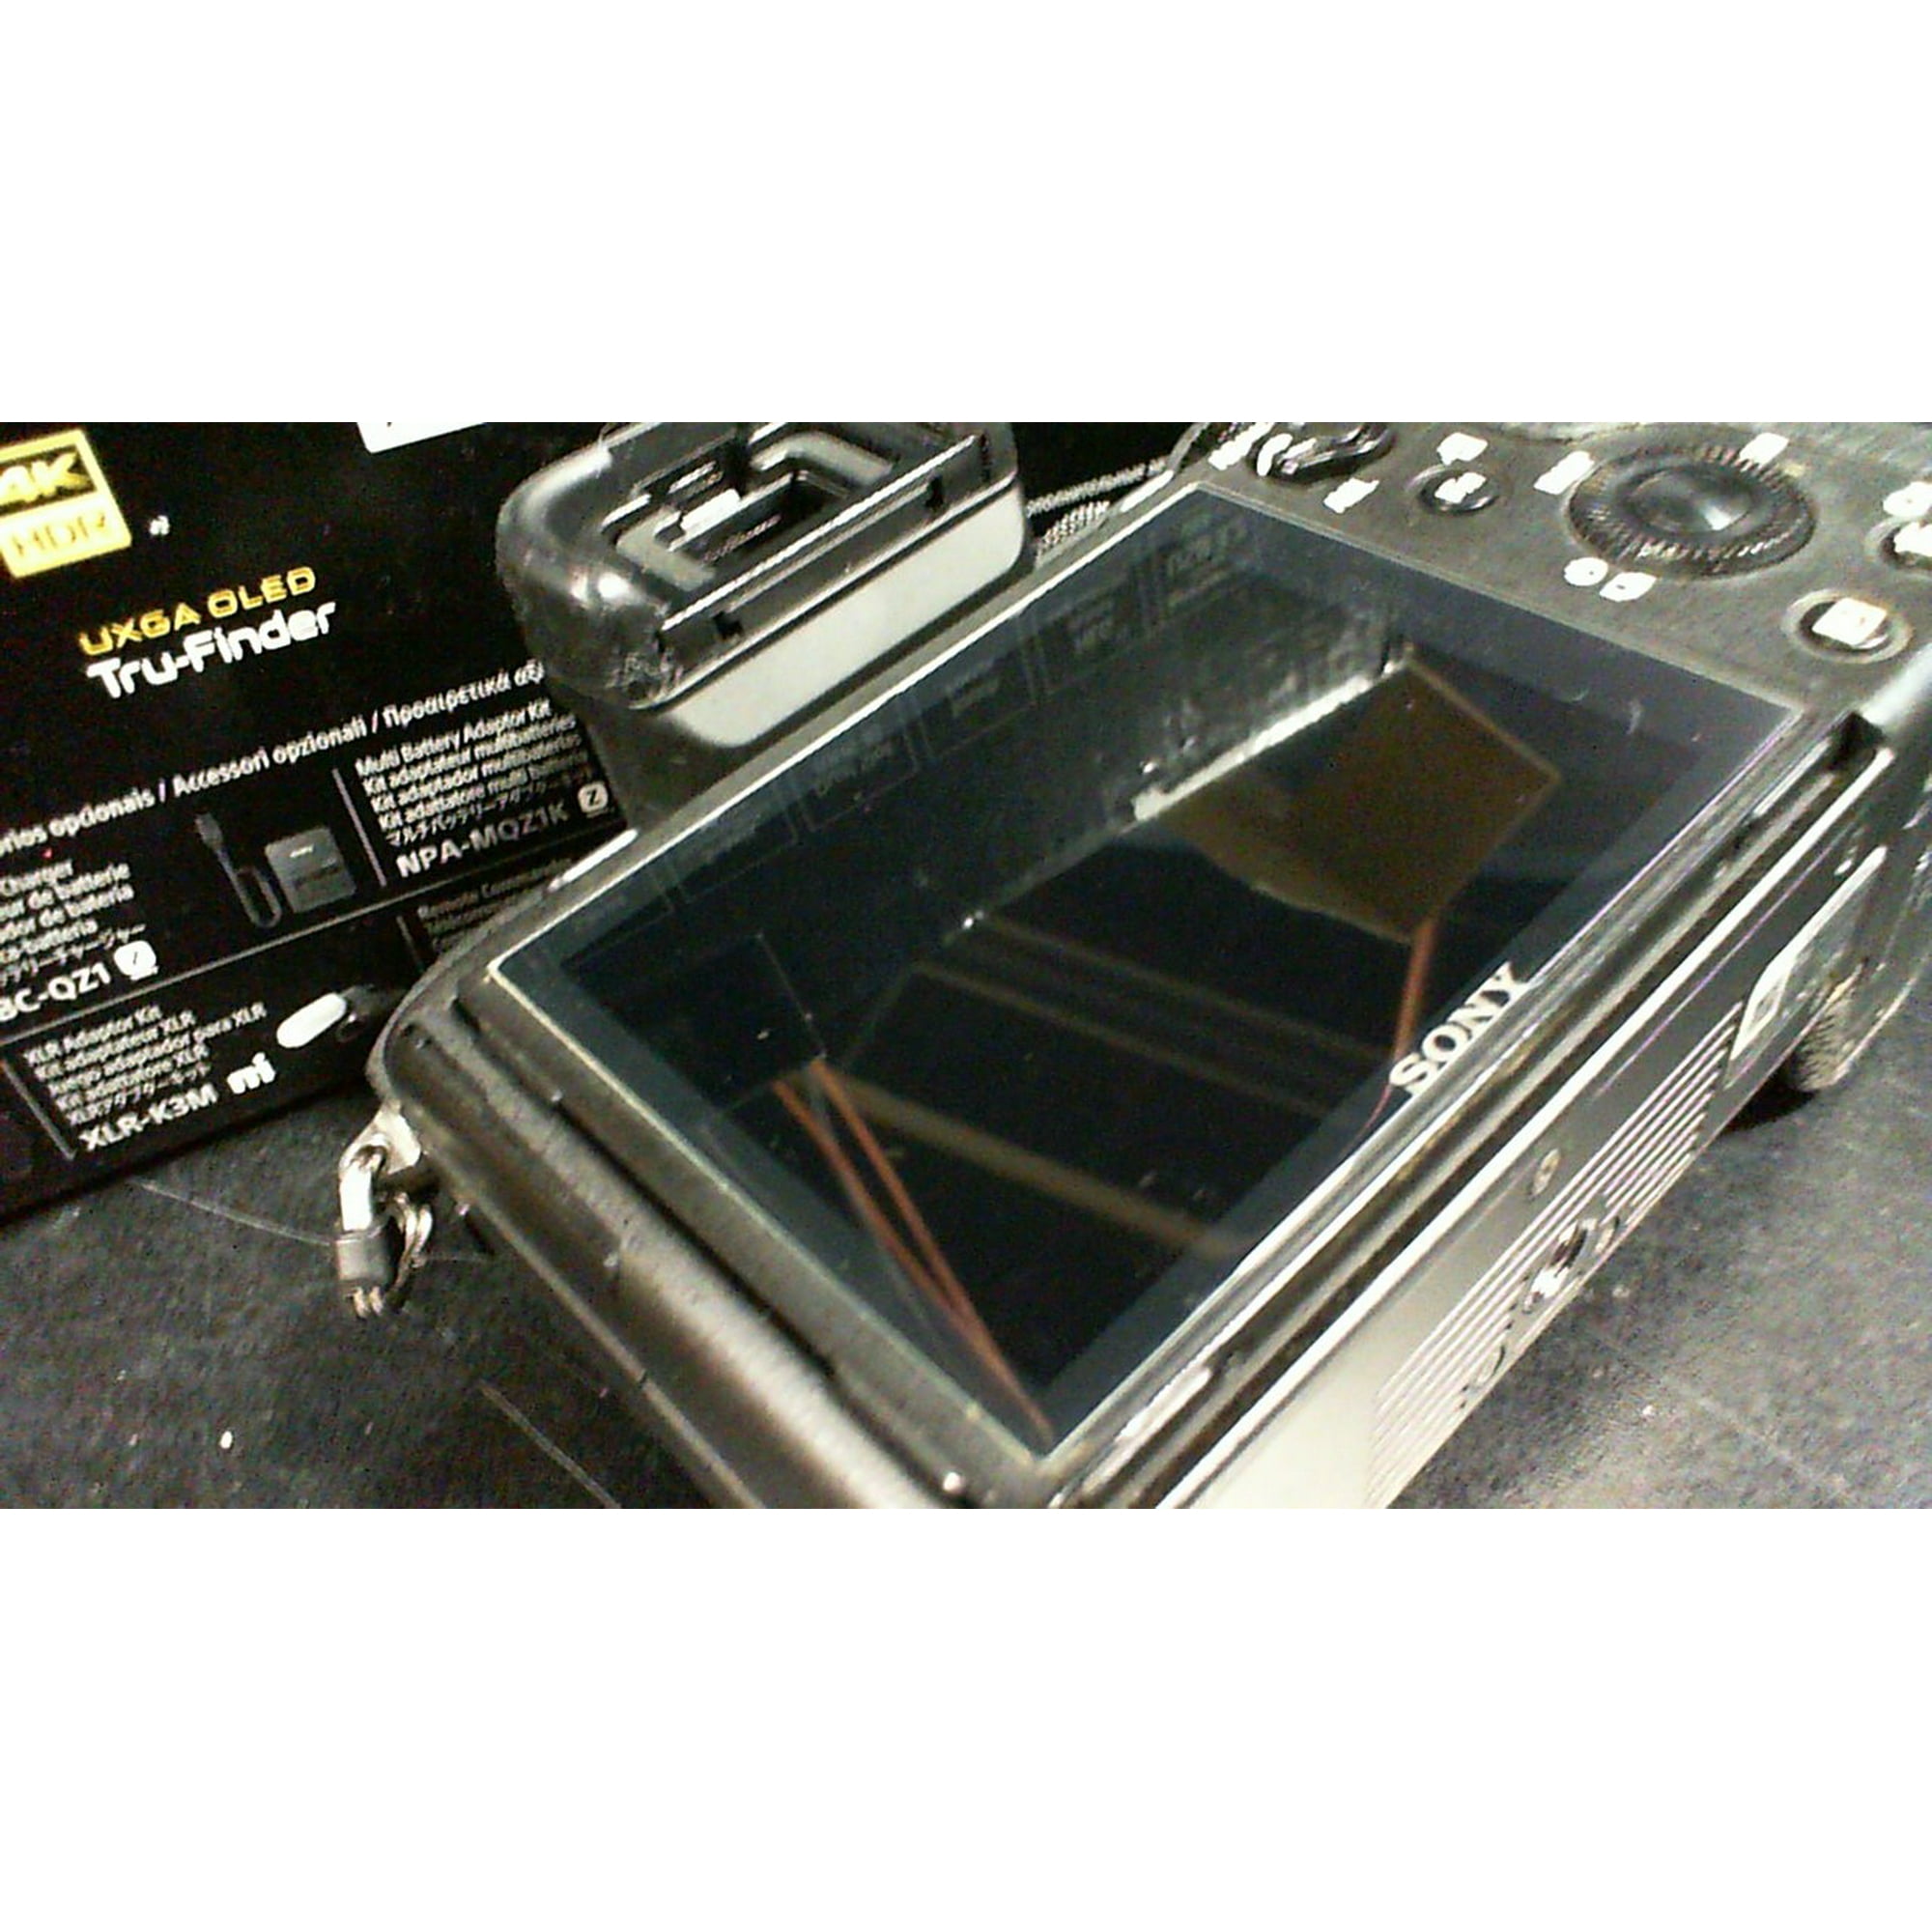  Sony Cámara sin espejo con lente intercambiable de fotograma  completo Alpha 1 : Electrónica